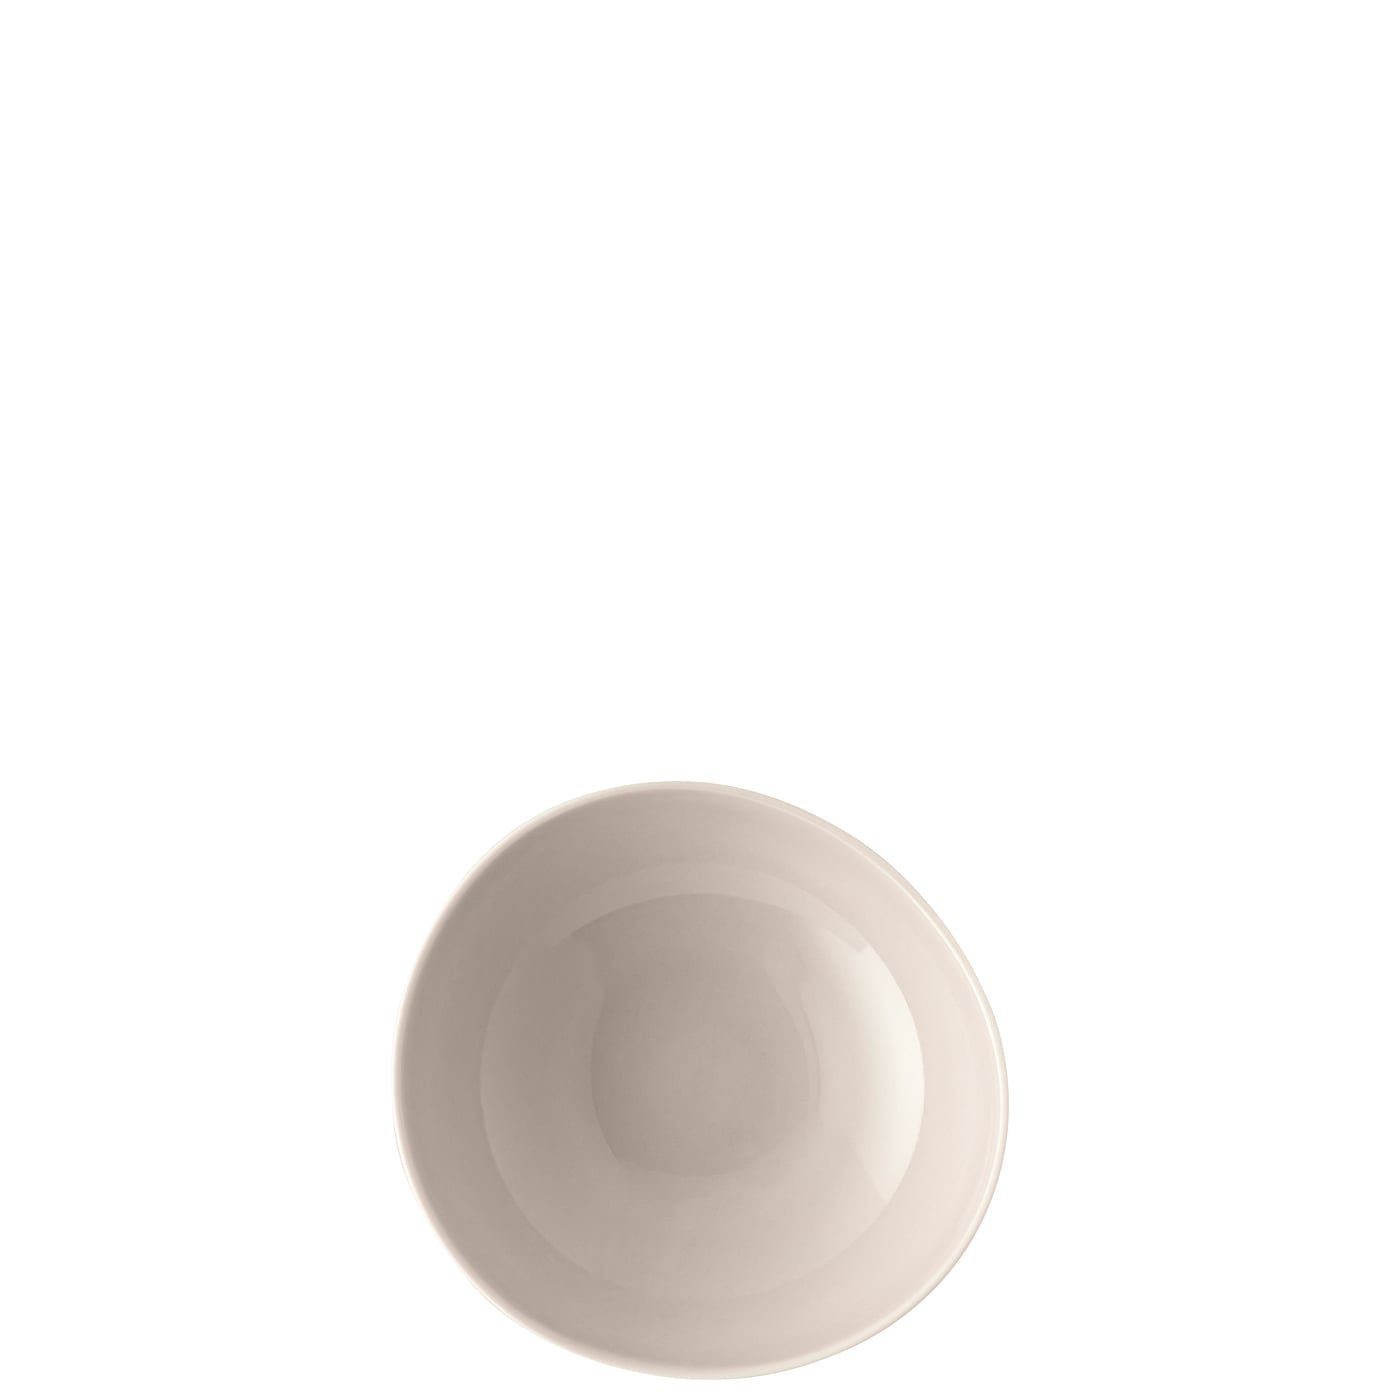 Rosenthal Schale Porzellan, Bowl Junto mikrowellengeeignet cm, Shell 15 Soft